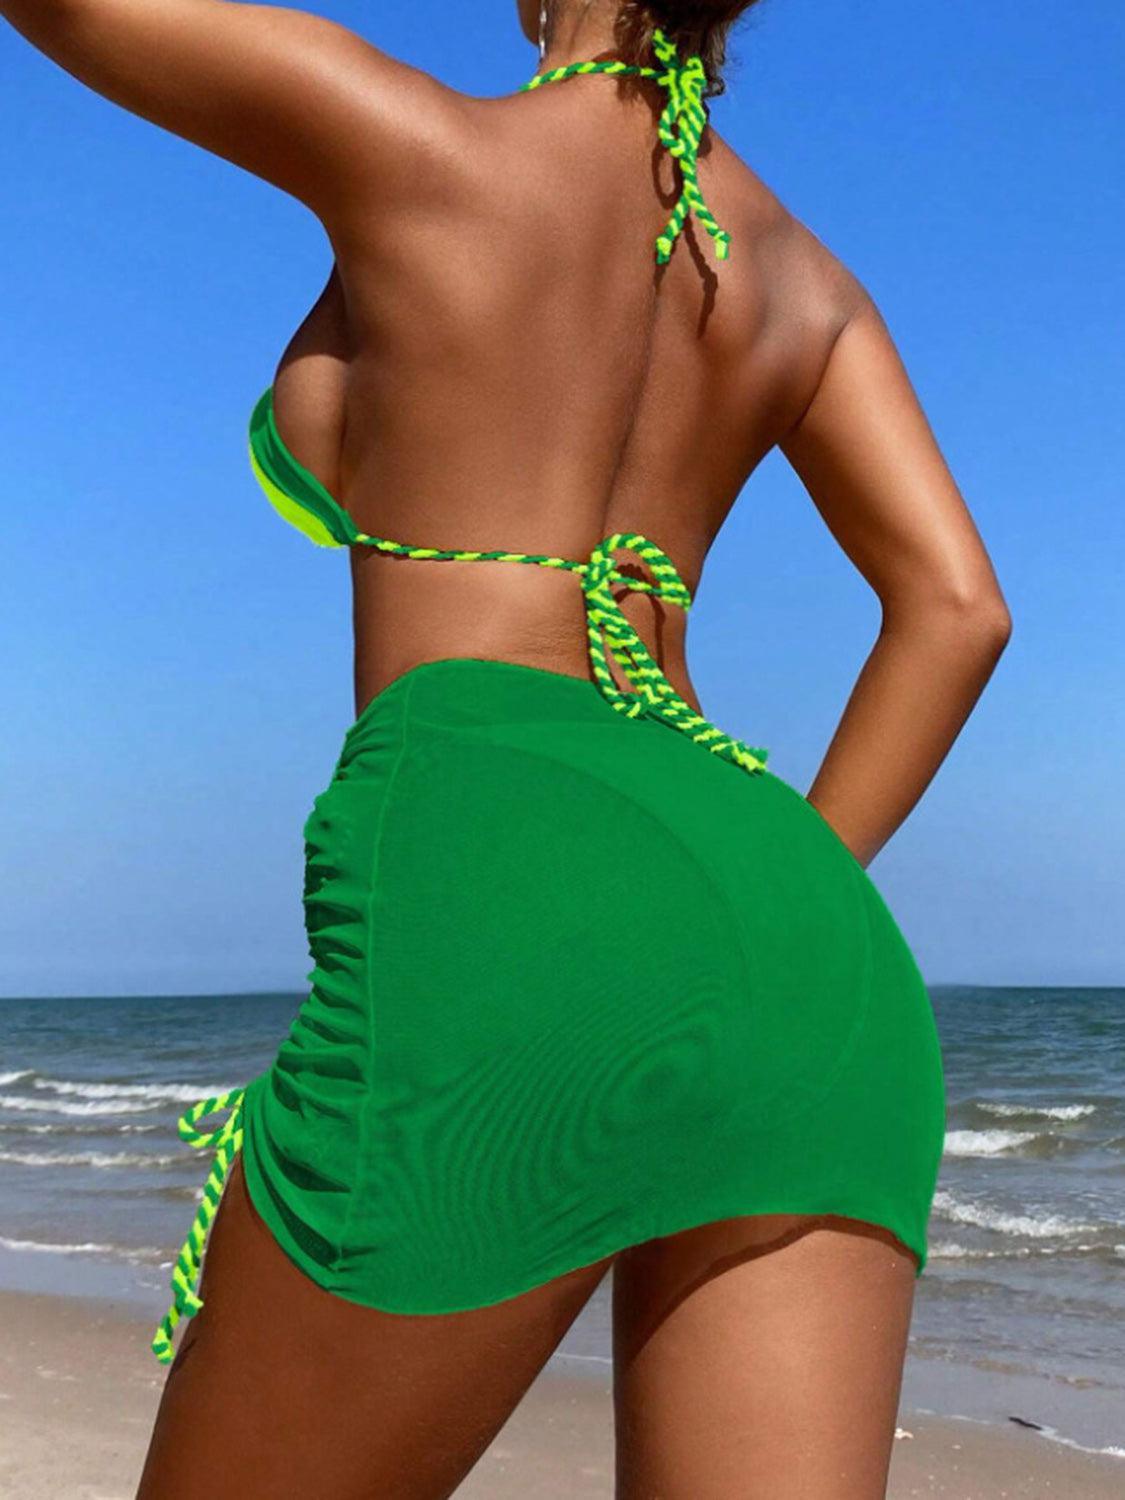 a woman in a green bikini on the beach